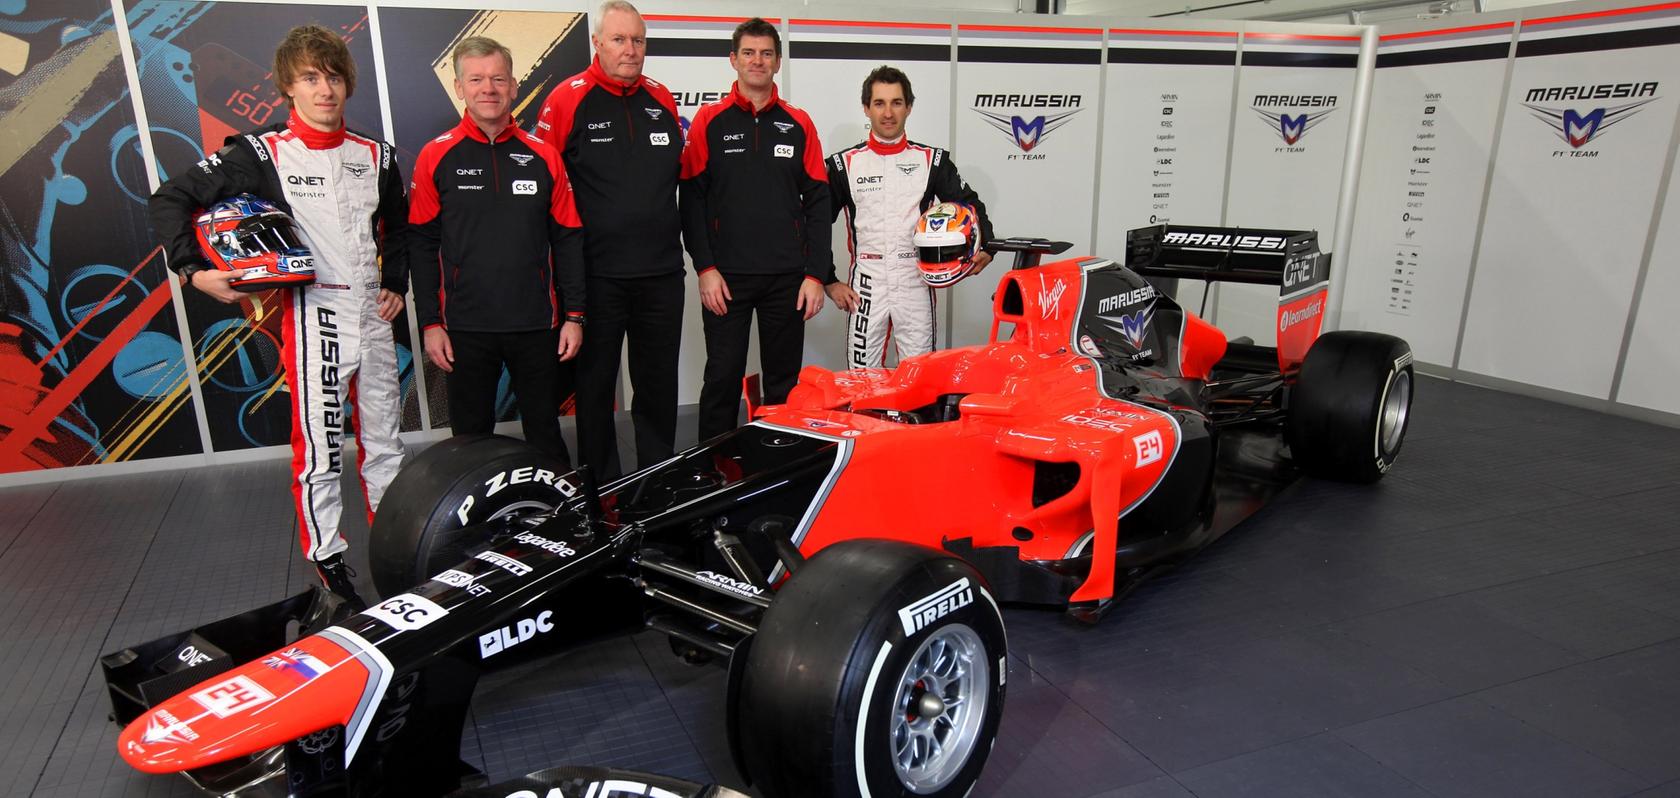 Wollte in der kommenden Saison unter dem Namen "Manor" an den Start gehen: Das Team des Marussia-Rennstalls.